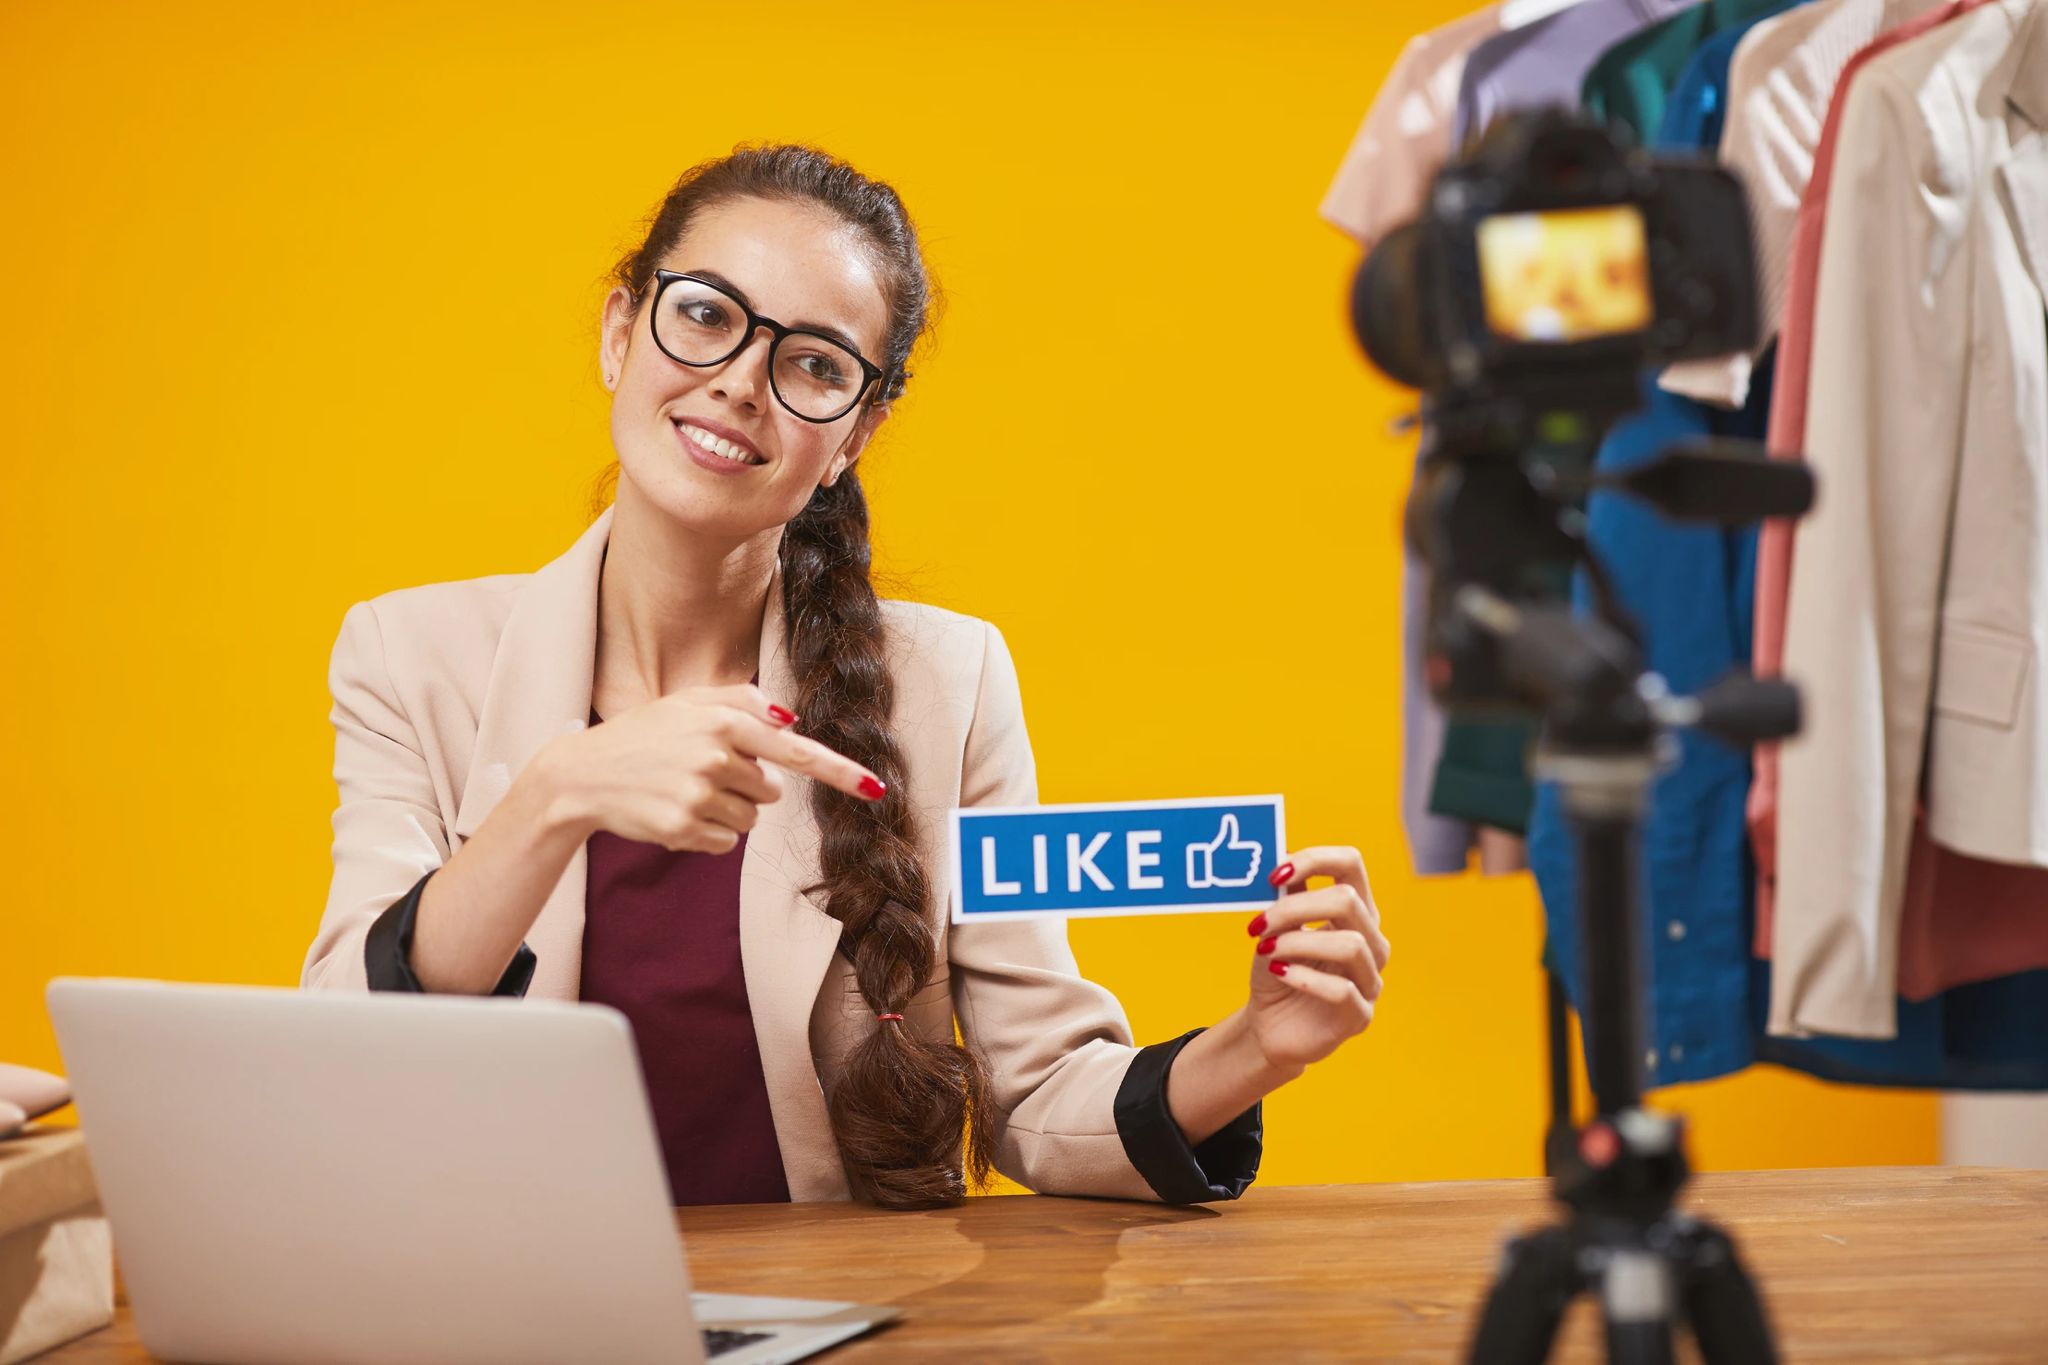 Frau hält ein Schild mit der Beschriftung "Like" in die Kamera